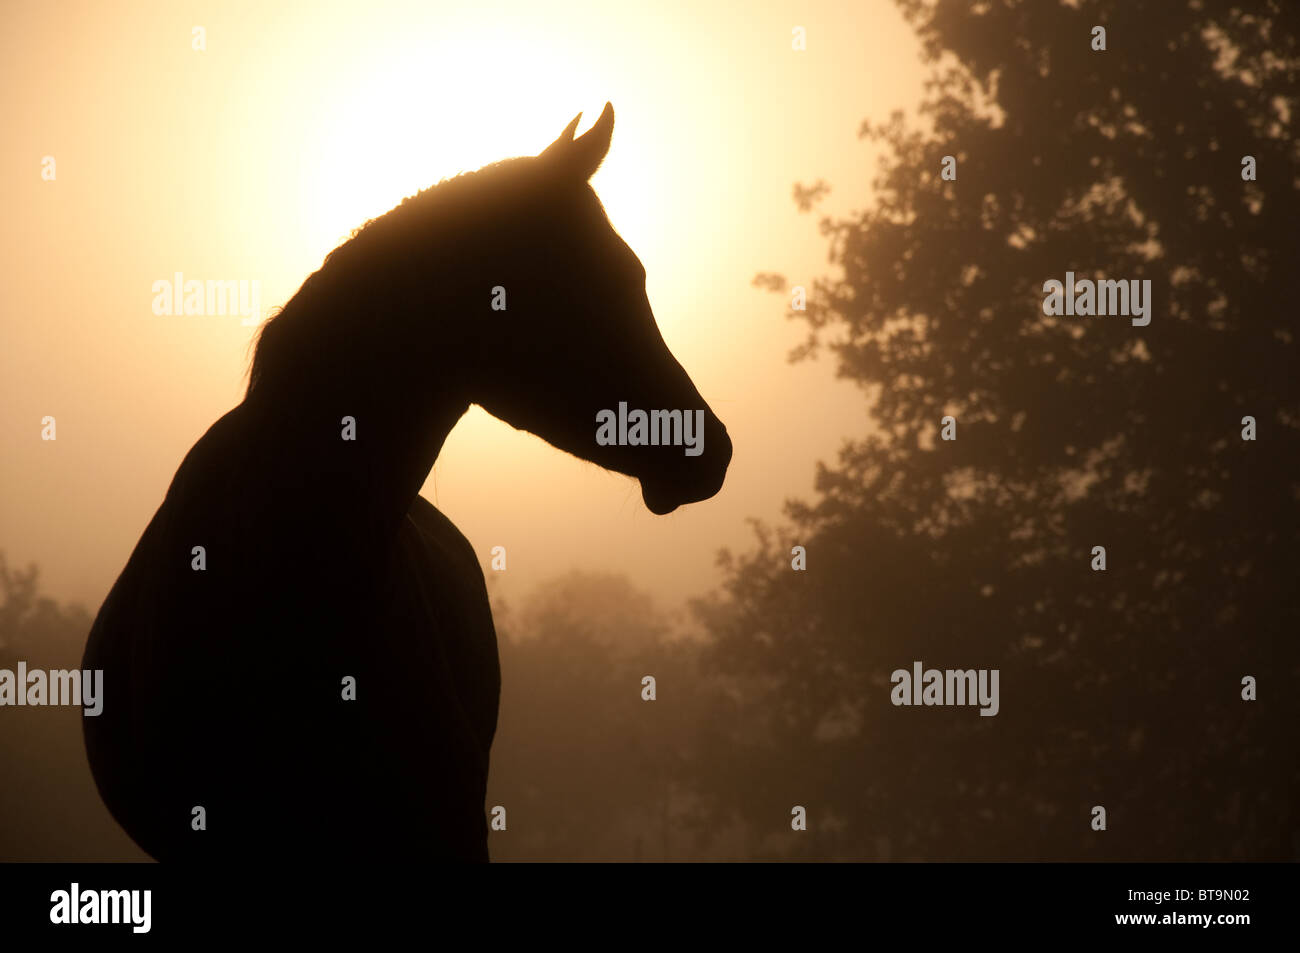 Silhouette eines schönen arabischen Pferdes gegen Sonne durch dichten Nebel Stockfoto